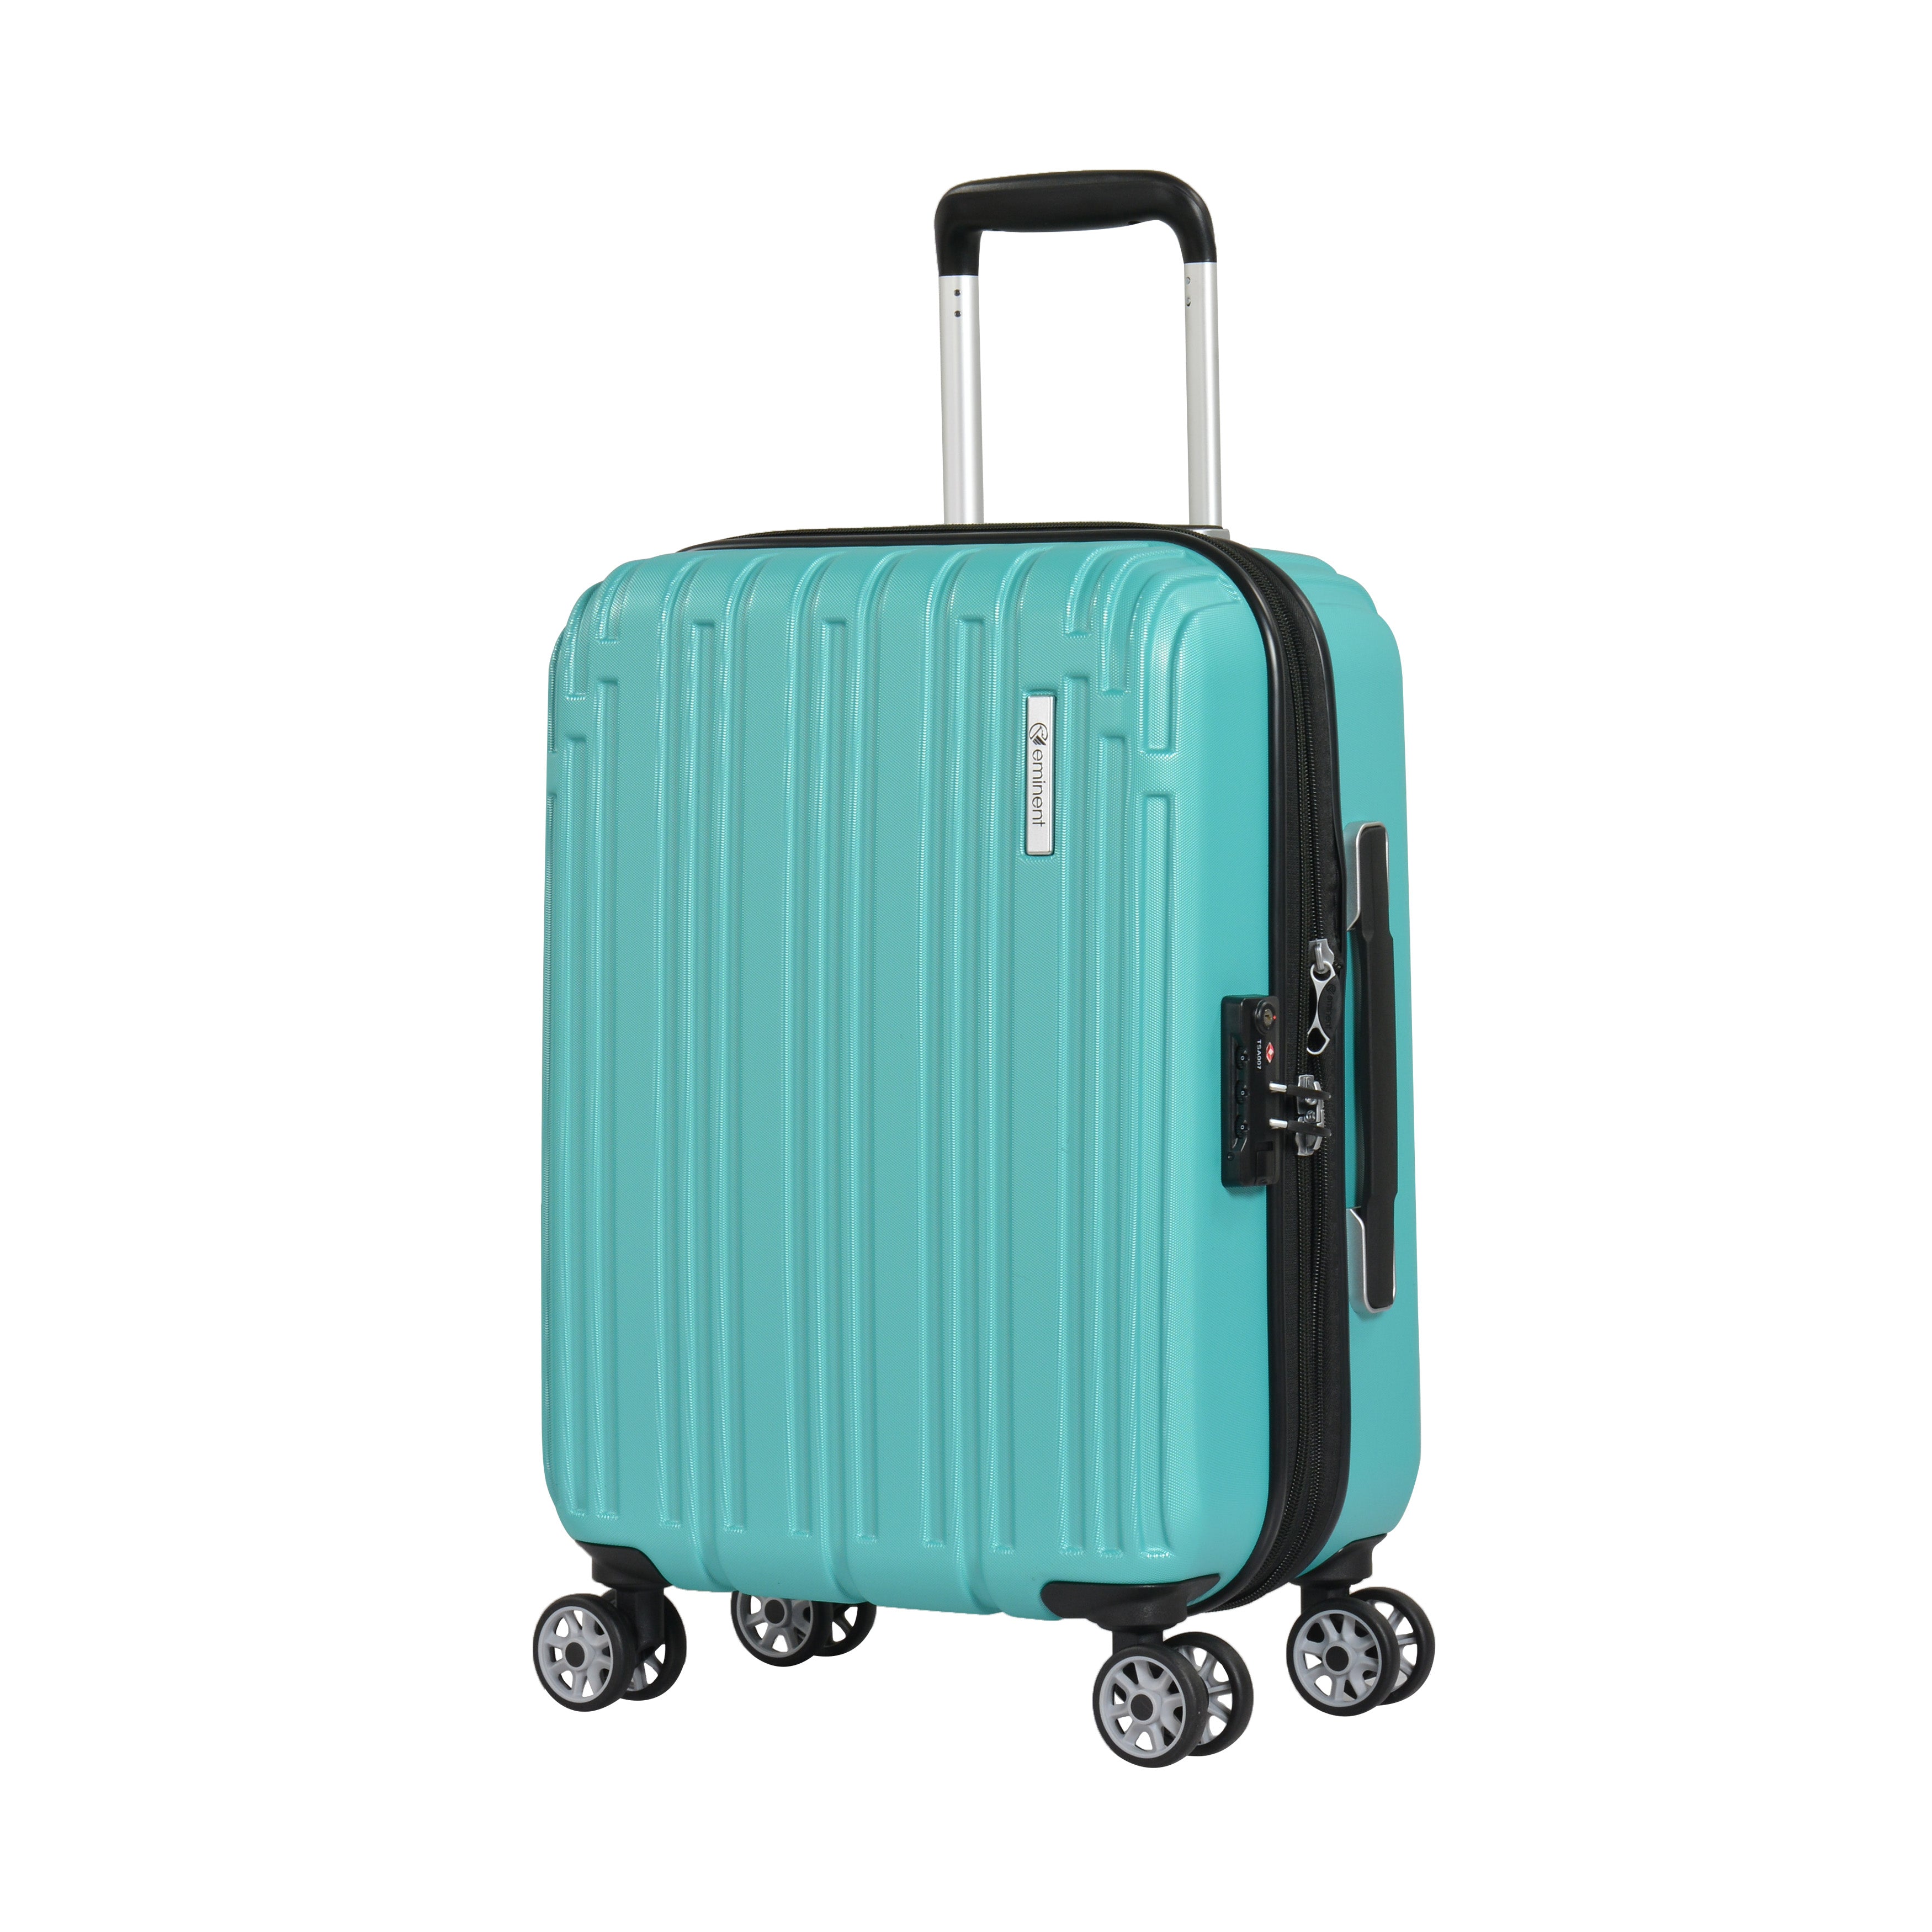 Eminent Semi Hard Eva Cabin Trolley Luggage Bag Black 29inch - AL0429BLK -  Eminent - Luggage - Travel - Fashion